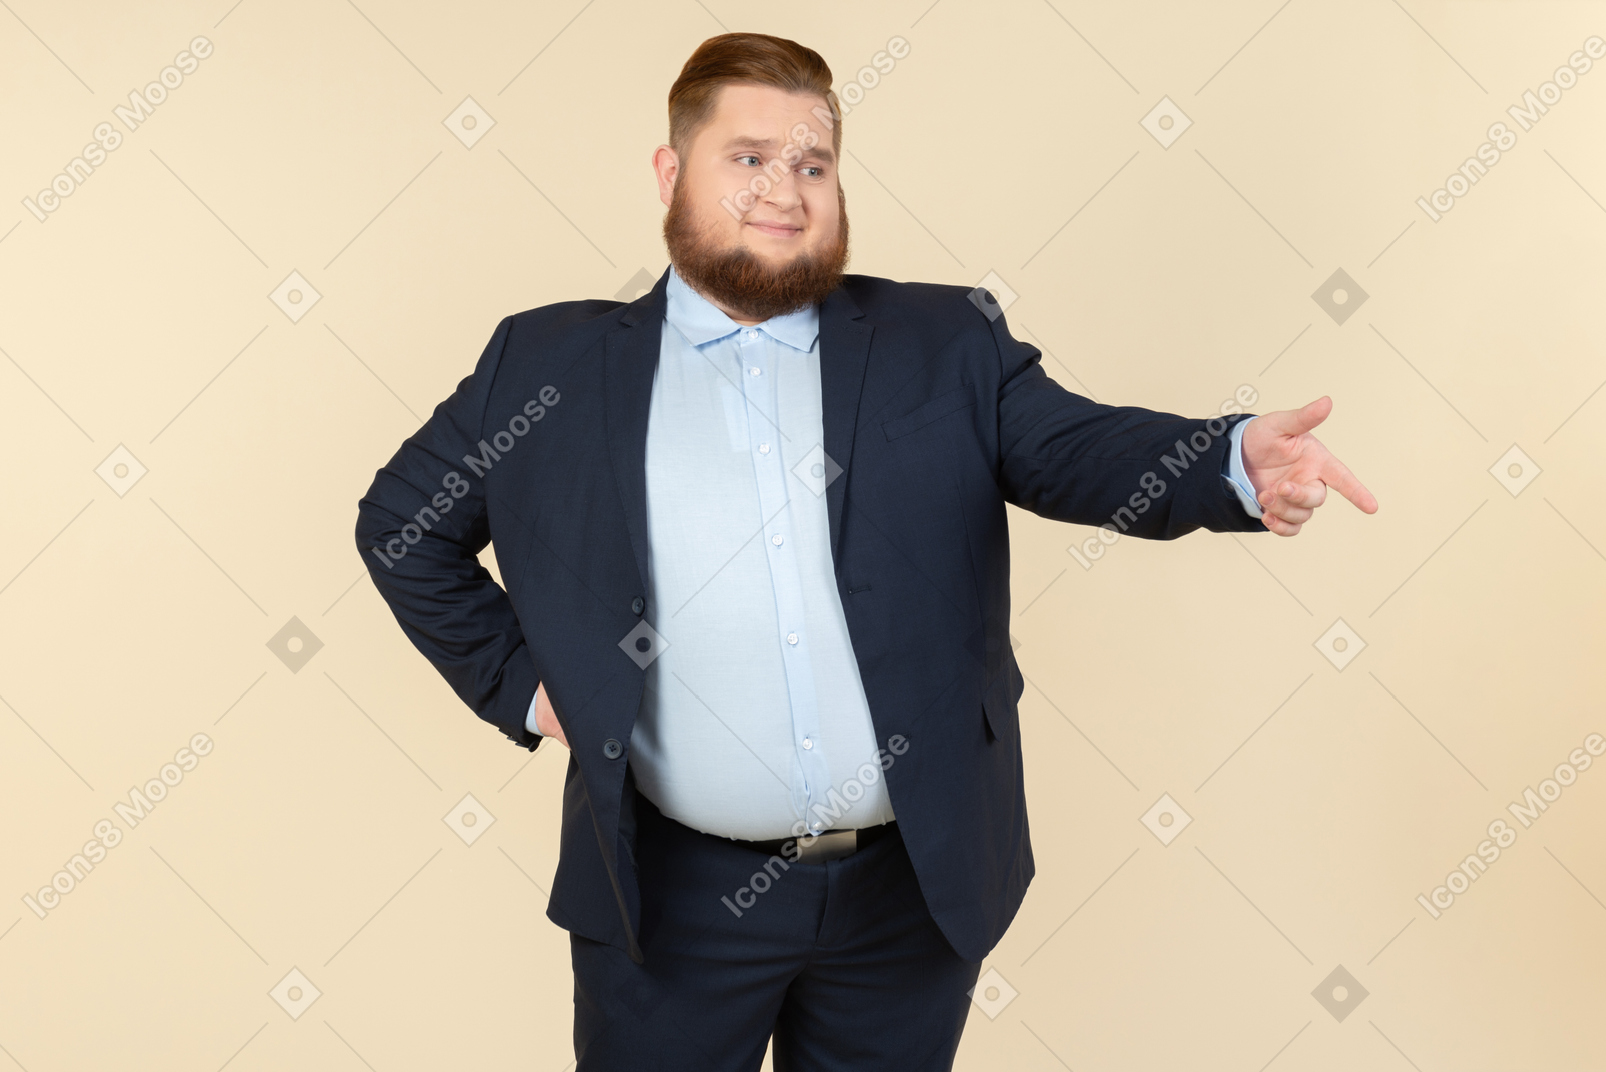 Junger übergewichtiger mann im anzug zu lachen